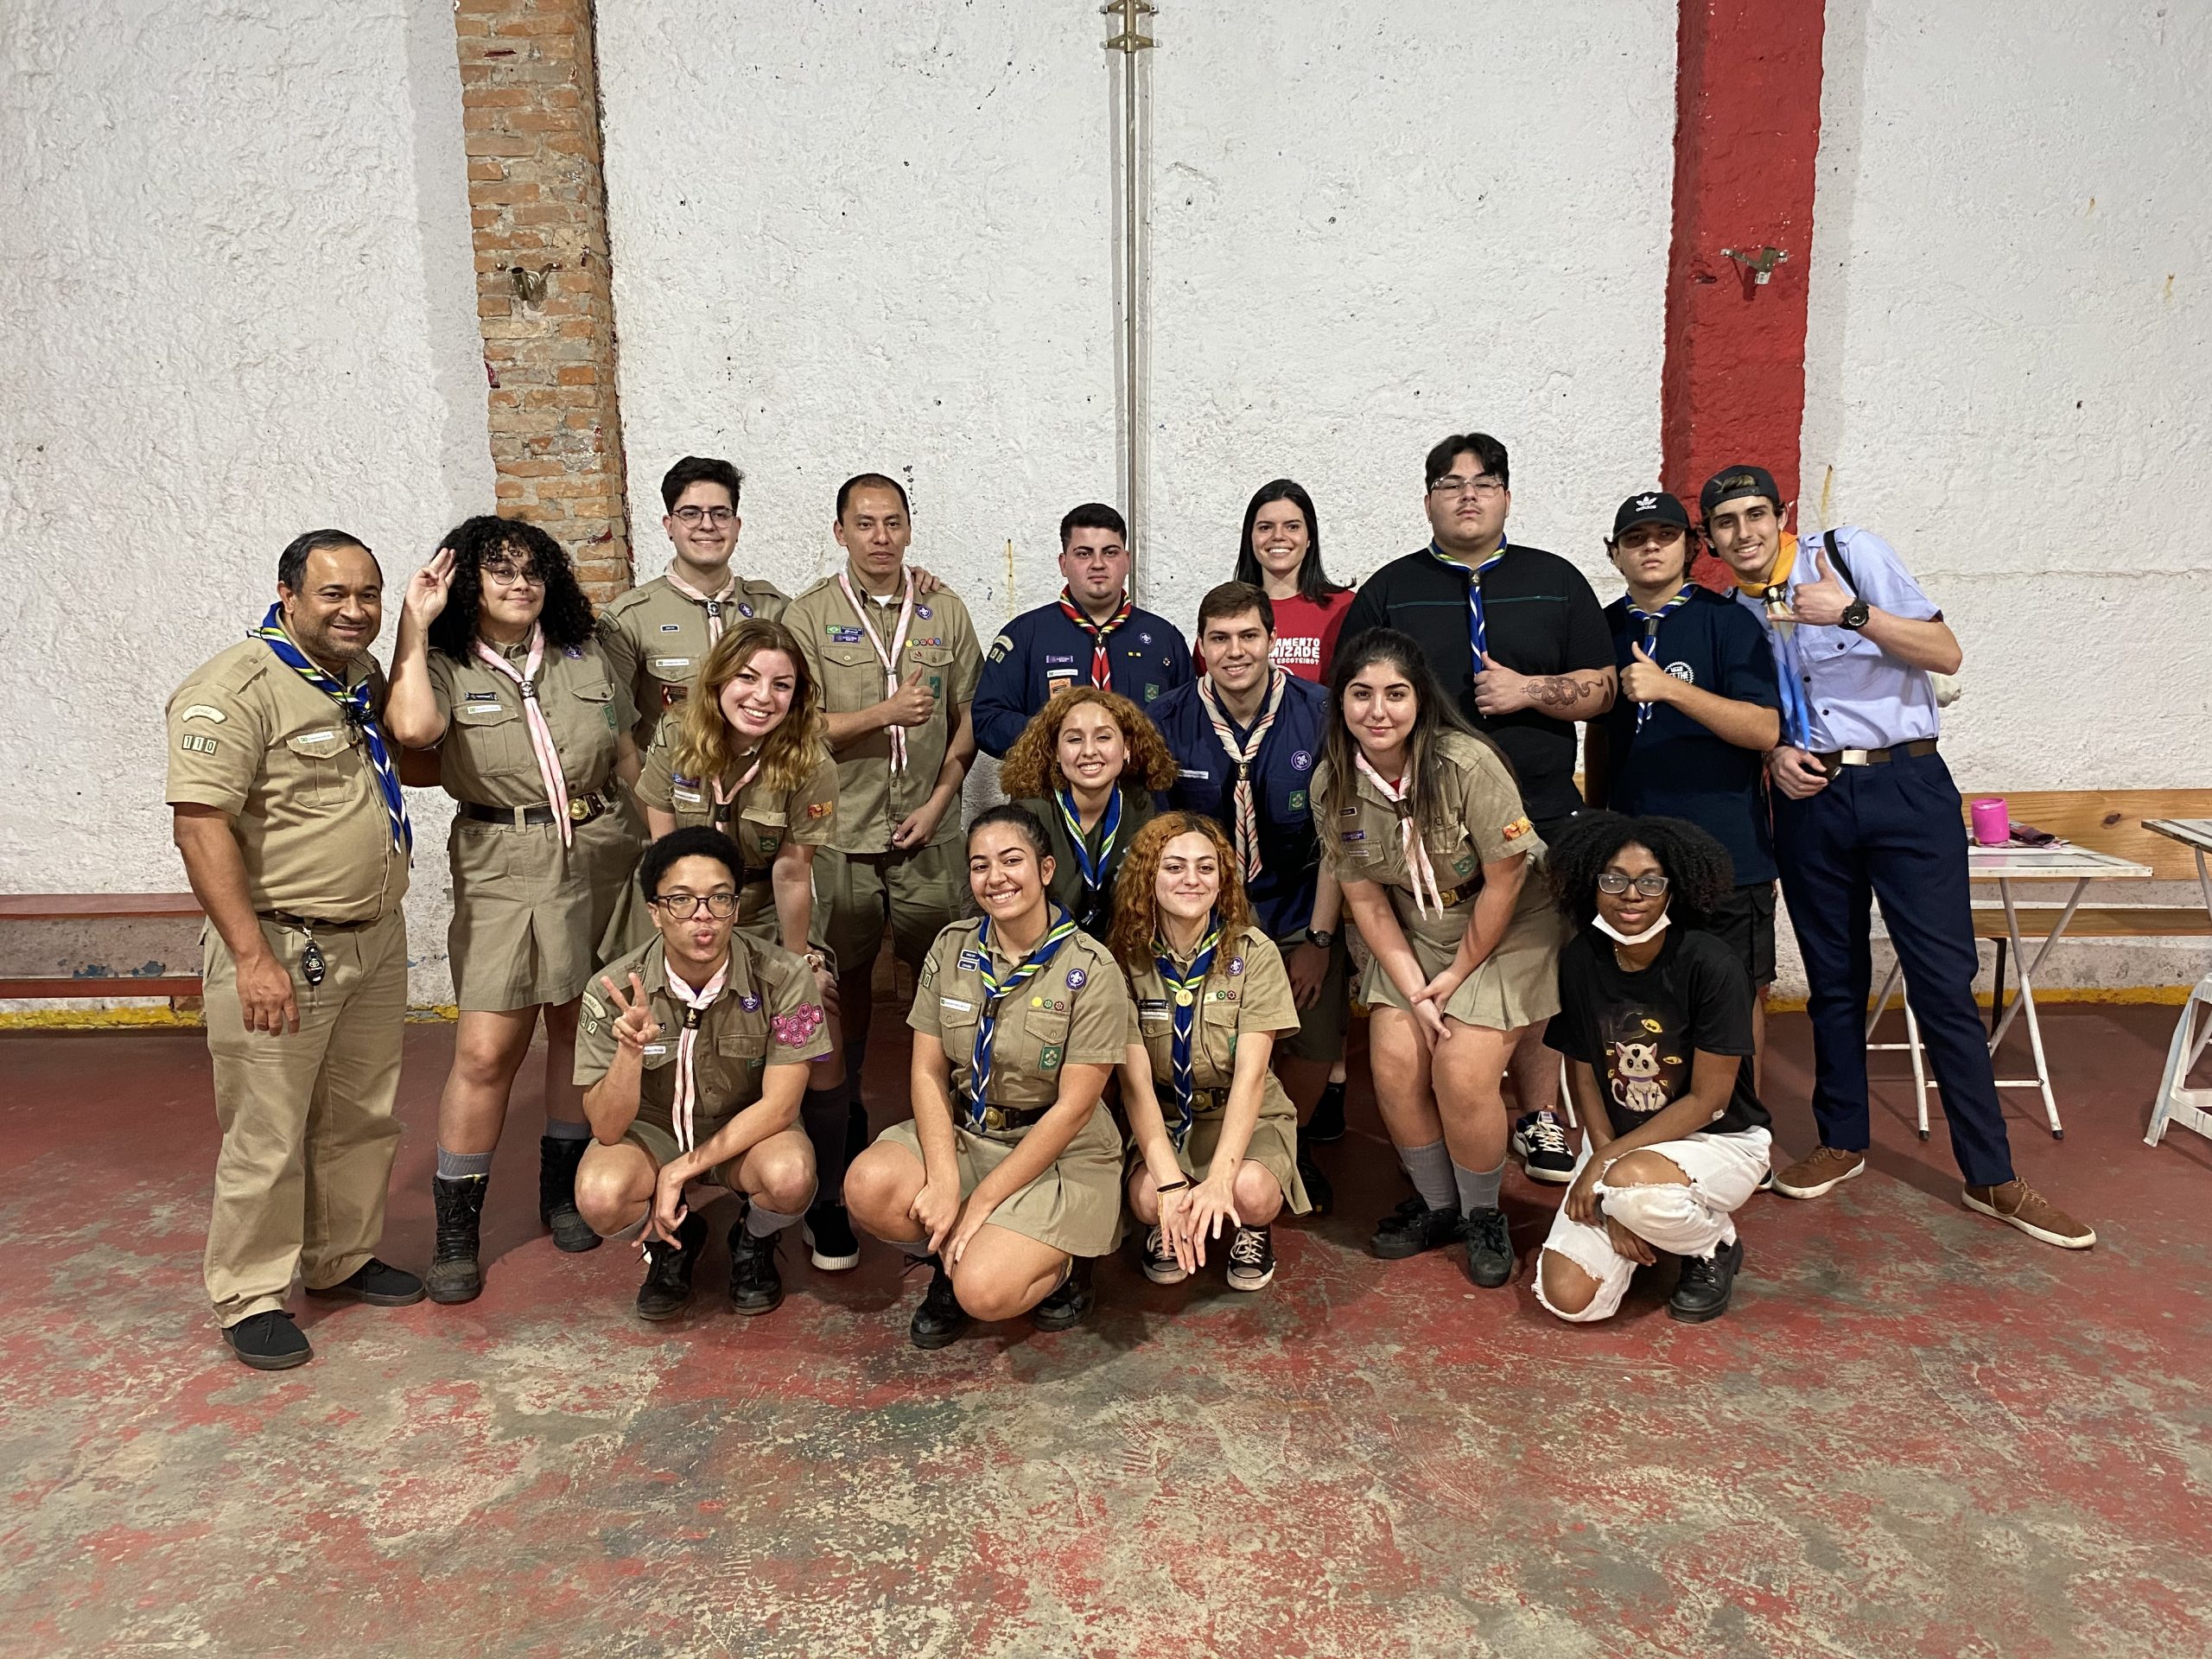 Grupo Escoteiro Irapuã realiza “Clã visita Clã”